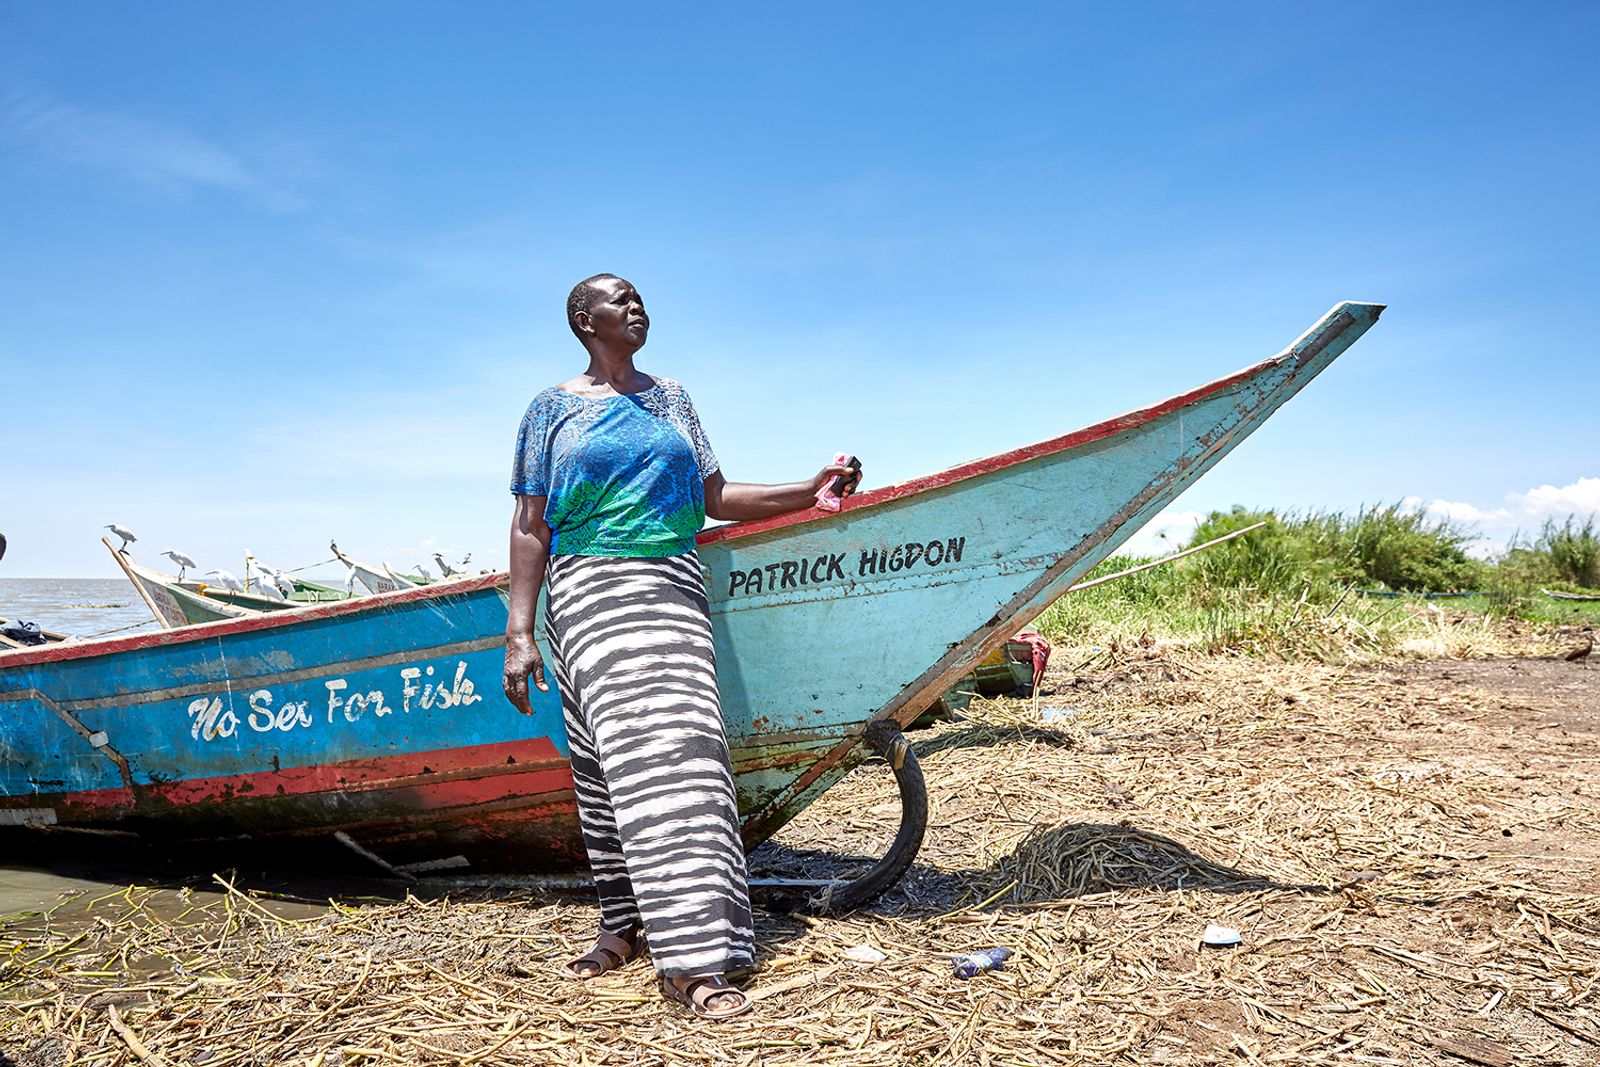 © Julia Gunther - Justine Adhiambo Obura, chairwoman of the No Sex Fish cooperative, Nduru Beach, Kenya, 2019.